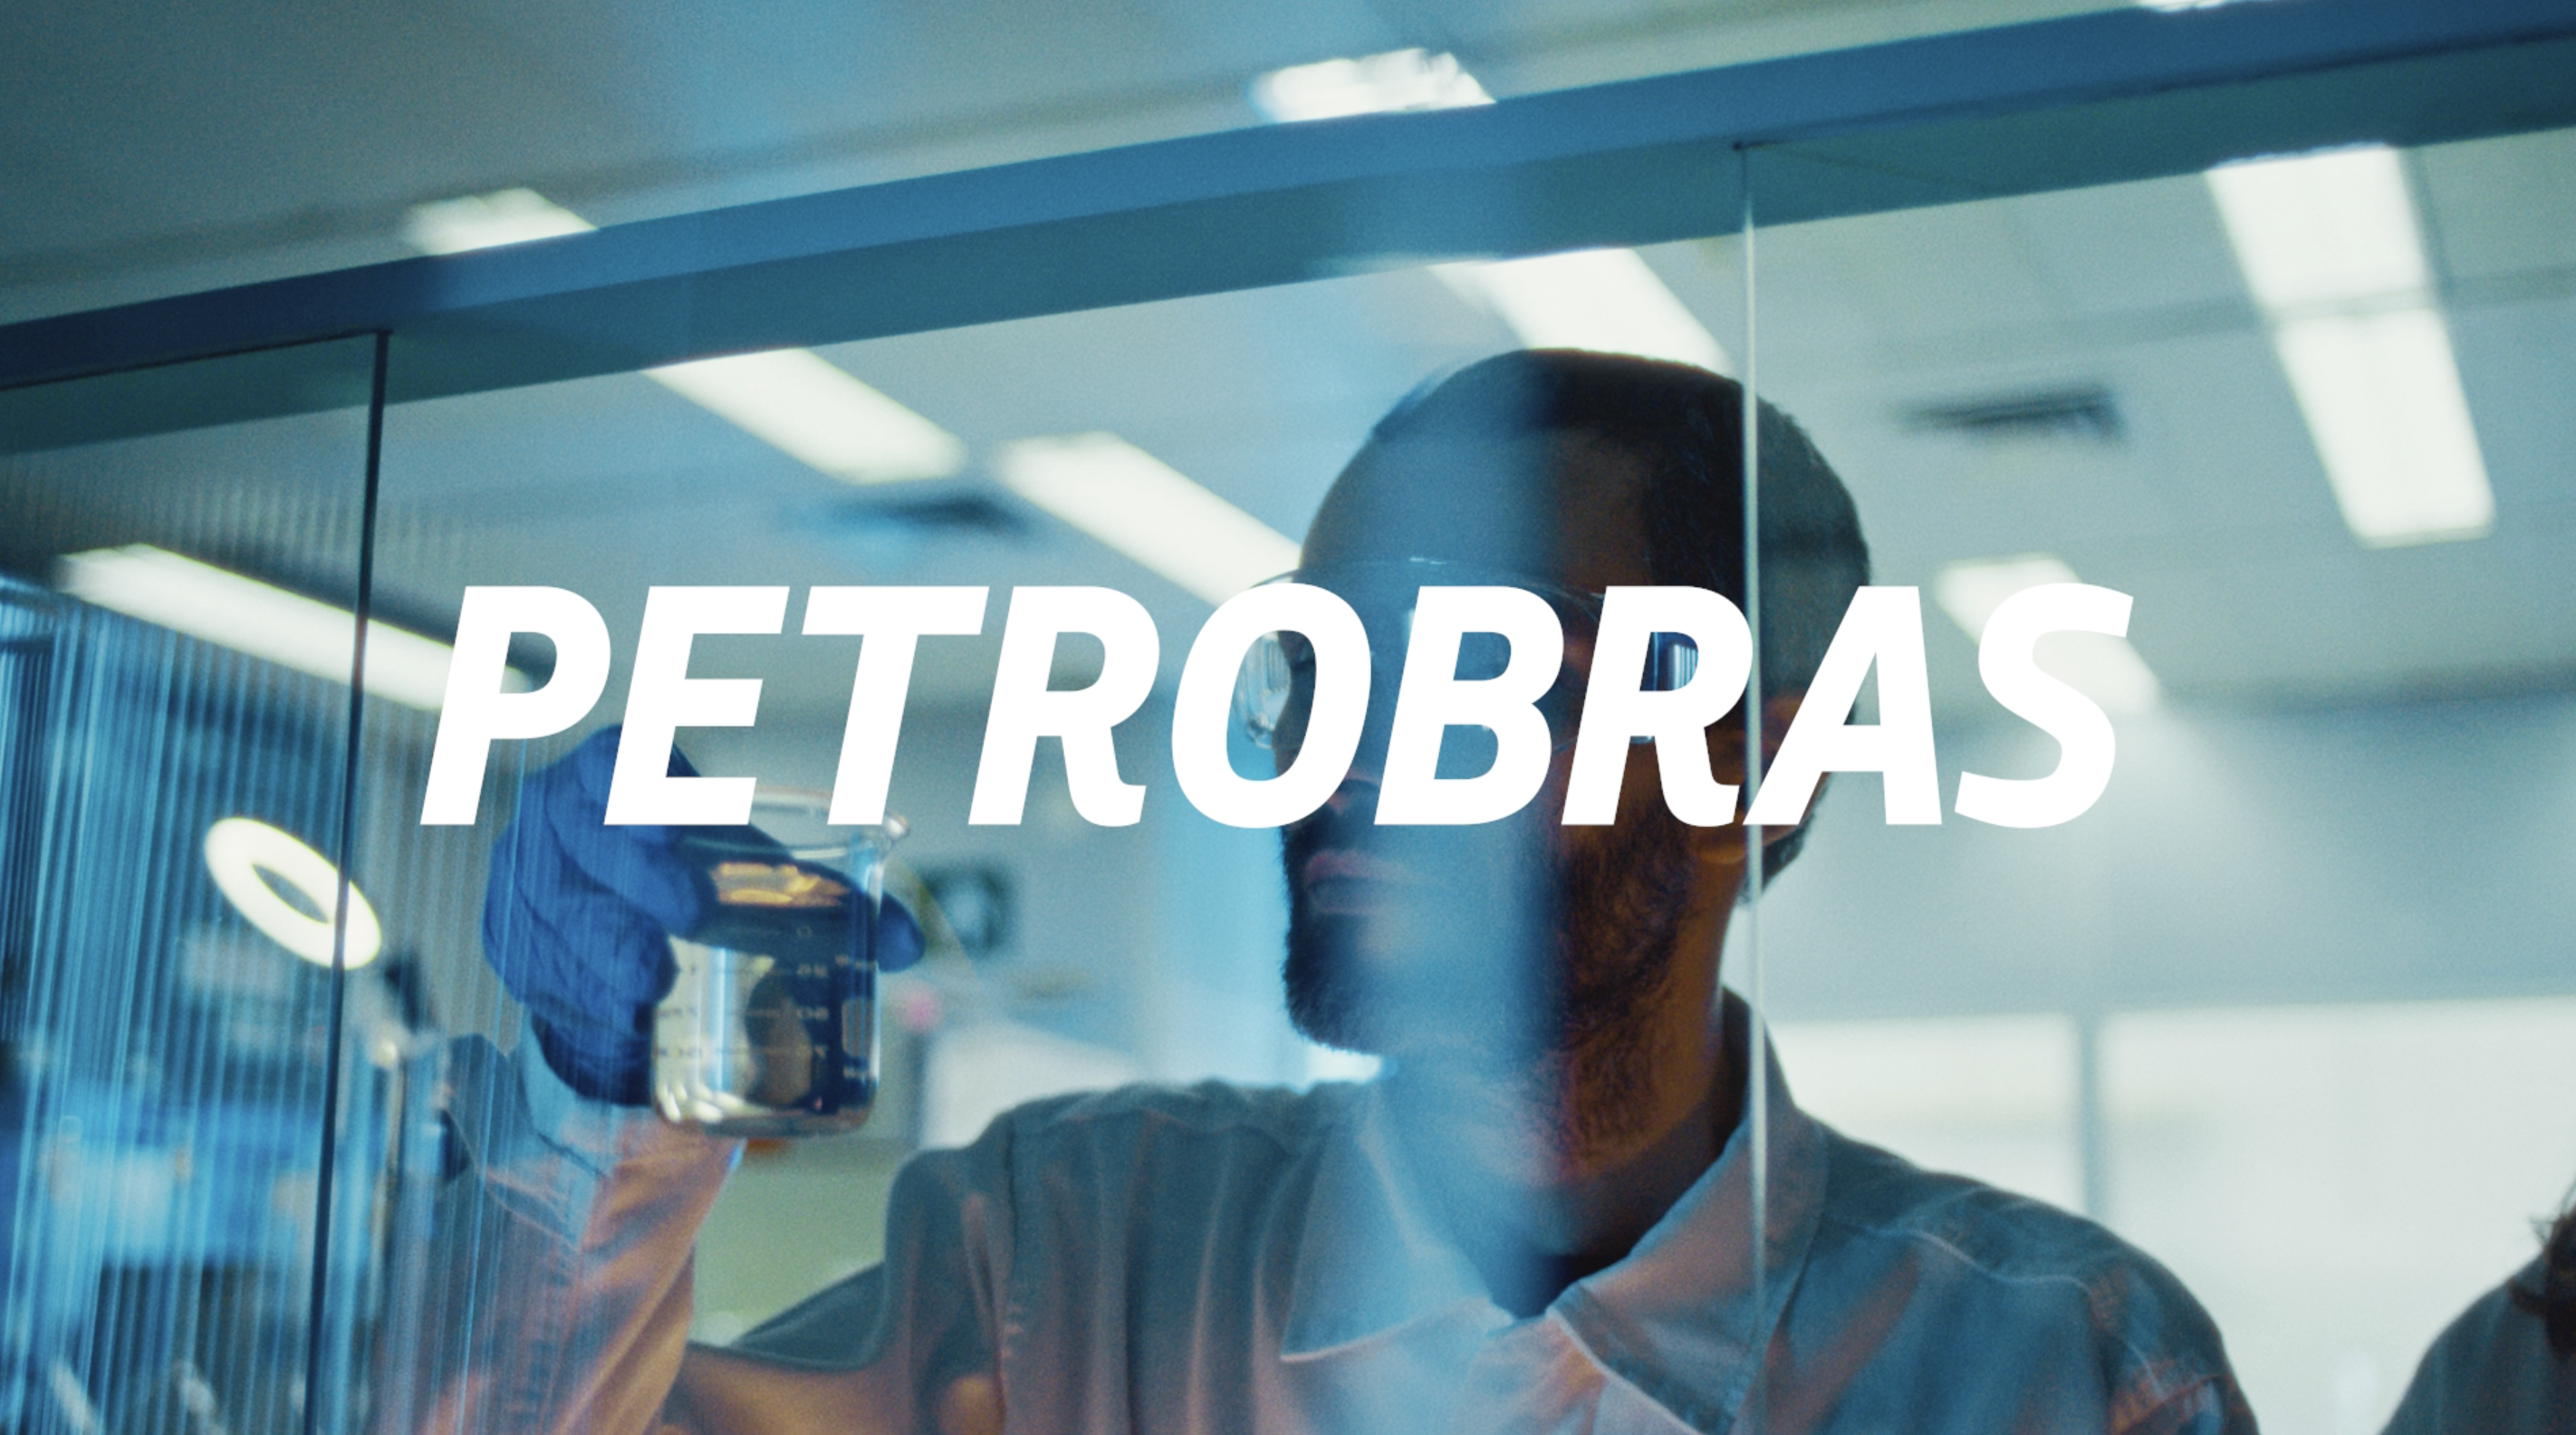 Petrobras compensará emissões de gasolina Podium com créditos de carbono, o primeiro combustível carbono neutro do Brasil. Na imagem: Homem negro, atrás de uma parede de vidro, analisa gasolina Podium em frasco de vidro em laboratório da Petrobras (Foto: Agência Petrobras)